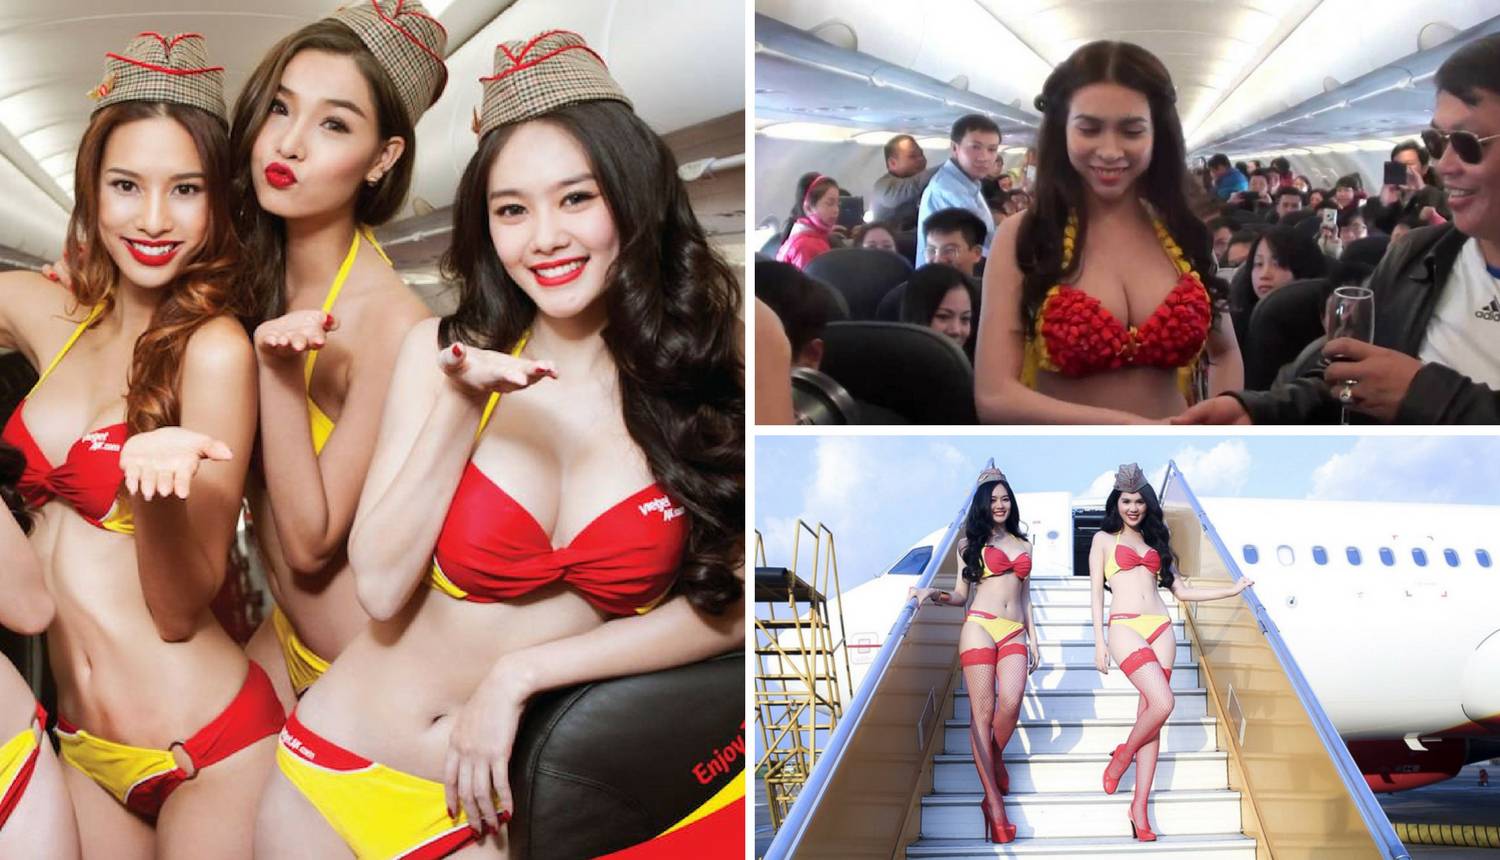 Stjuardese poslužuju putnike u bikinijima - svi žele na taj let